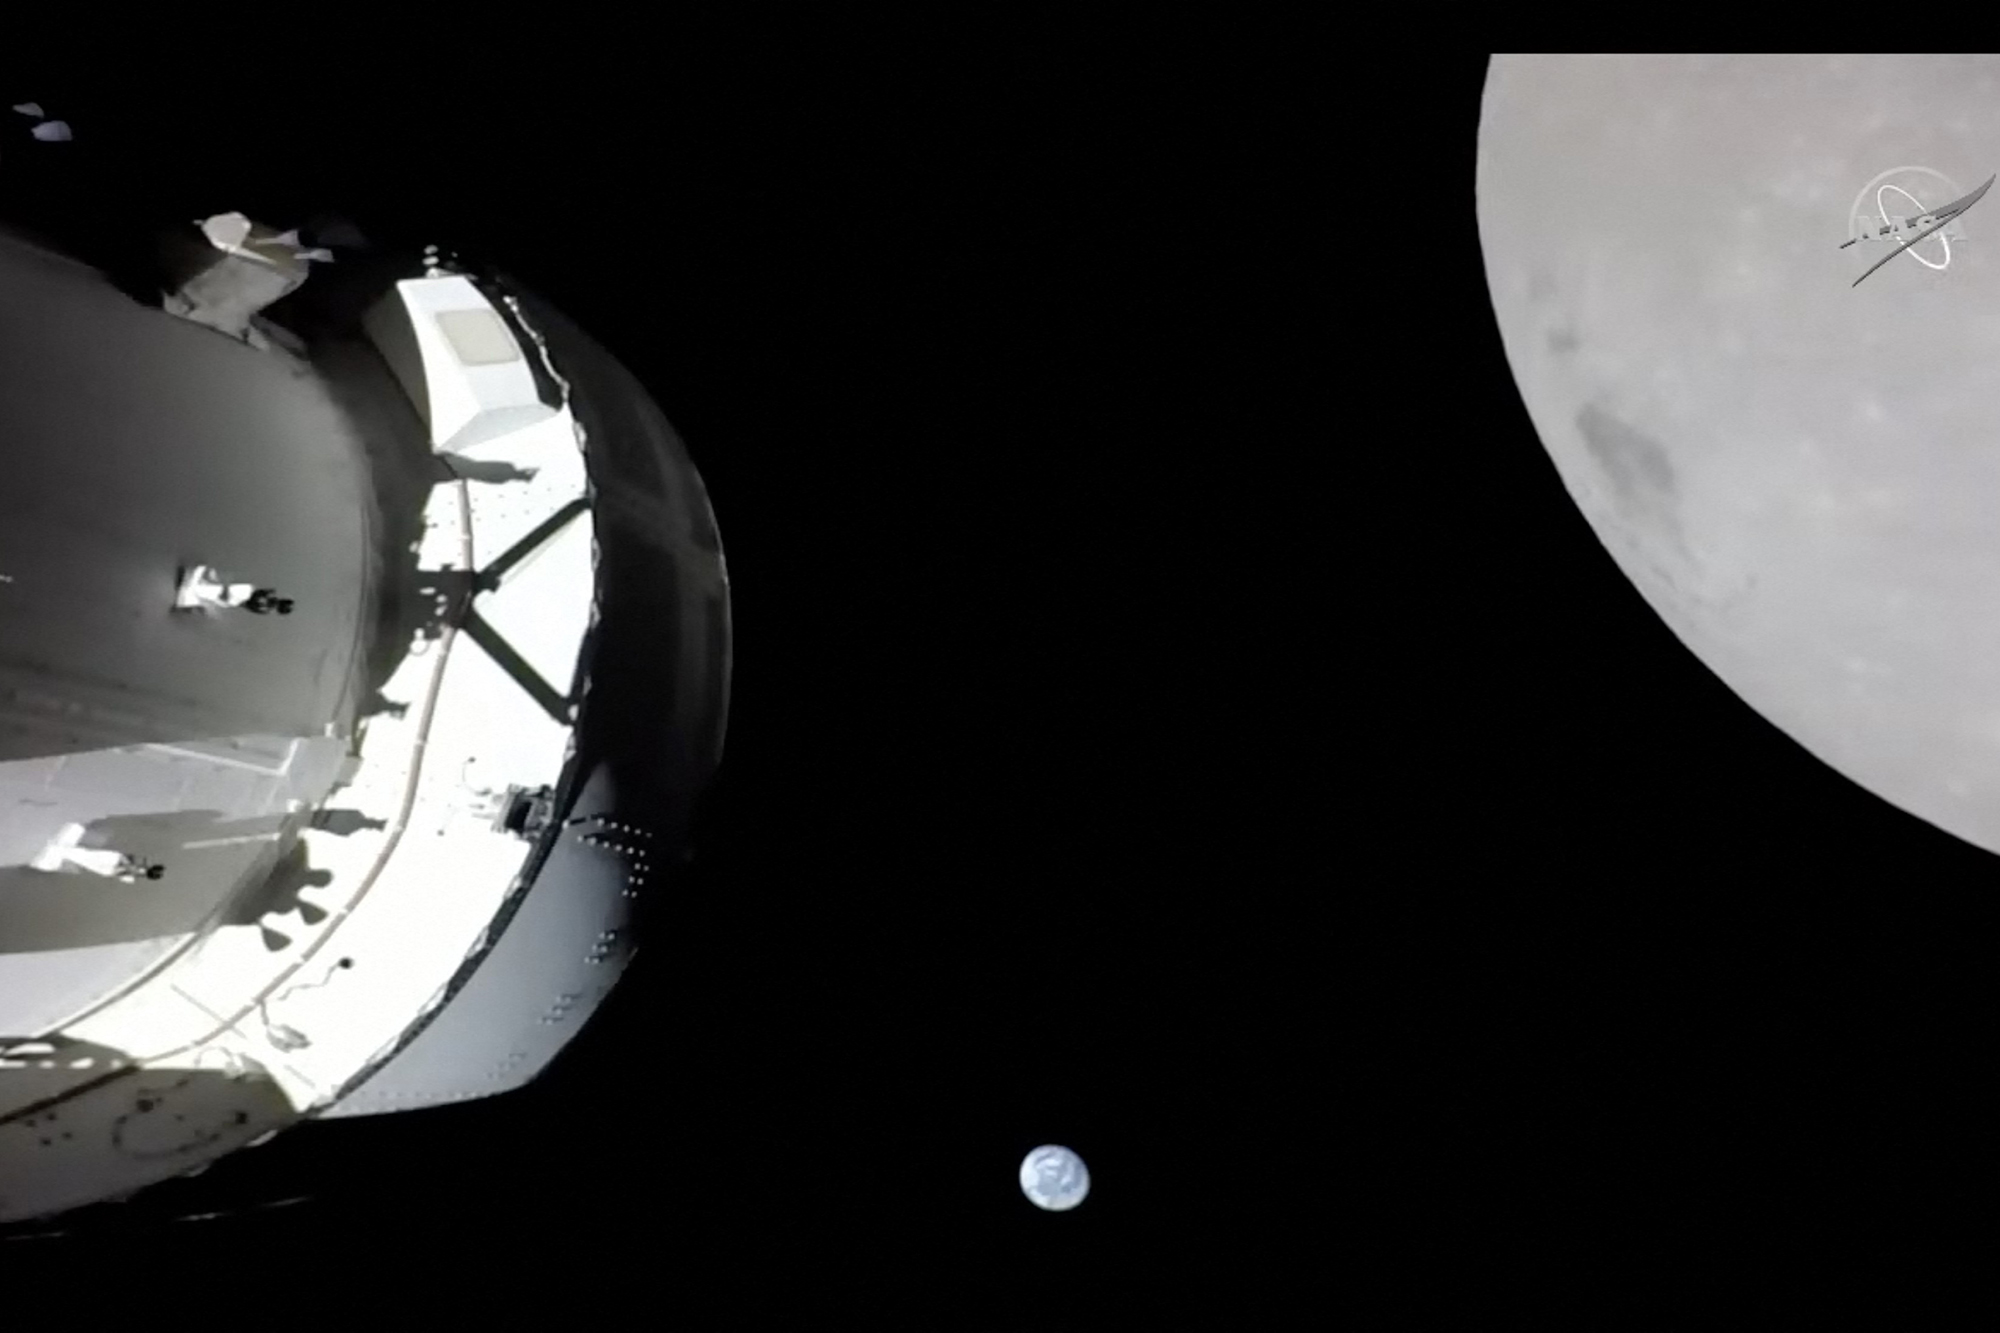 Die Raumkapsel, die Erde und der Mond, aufgenommen von einer Kamera auf dem Solar-Array-Flügel von Orion (Bild: Handout/NasaTV/AFP)